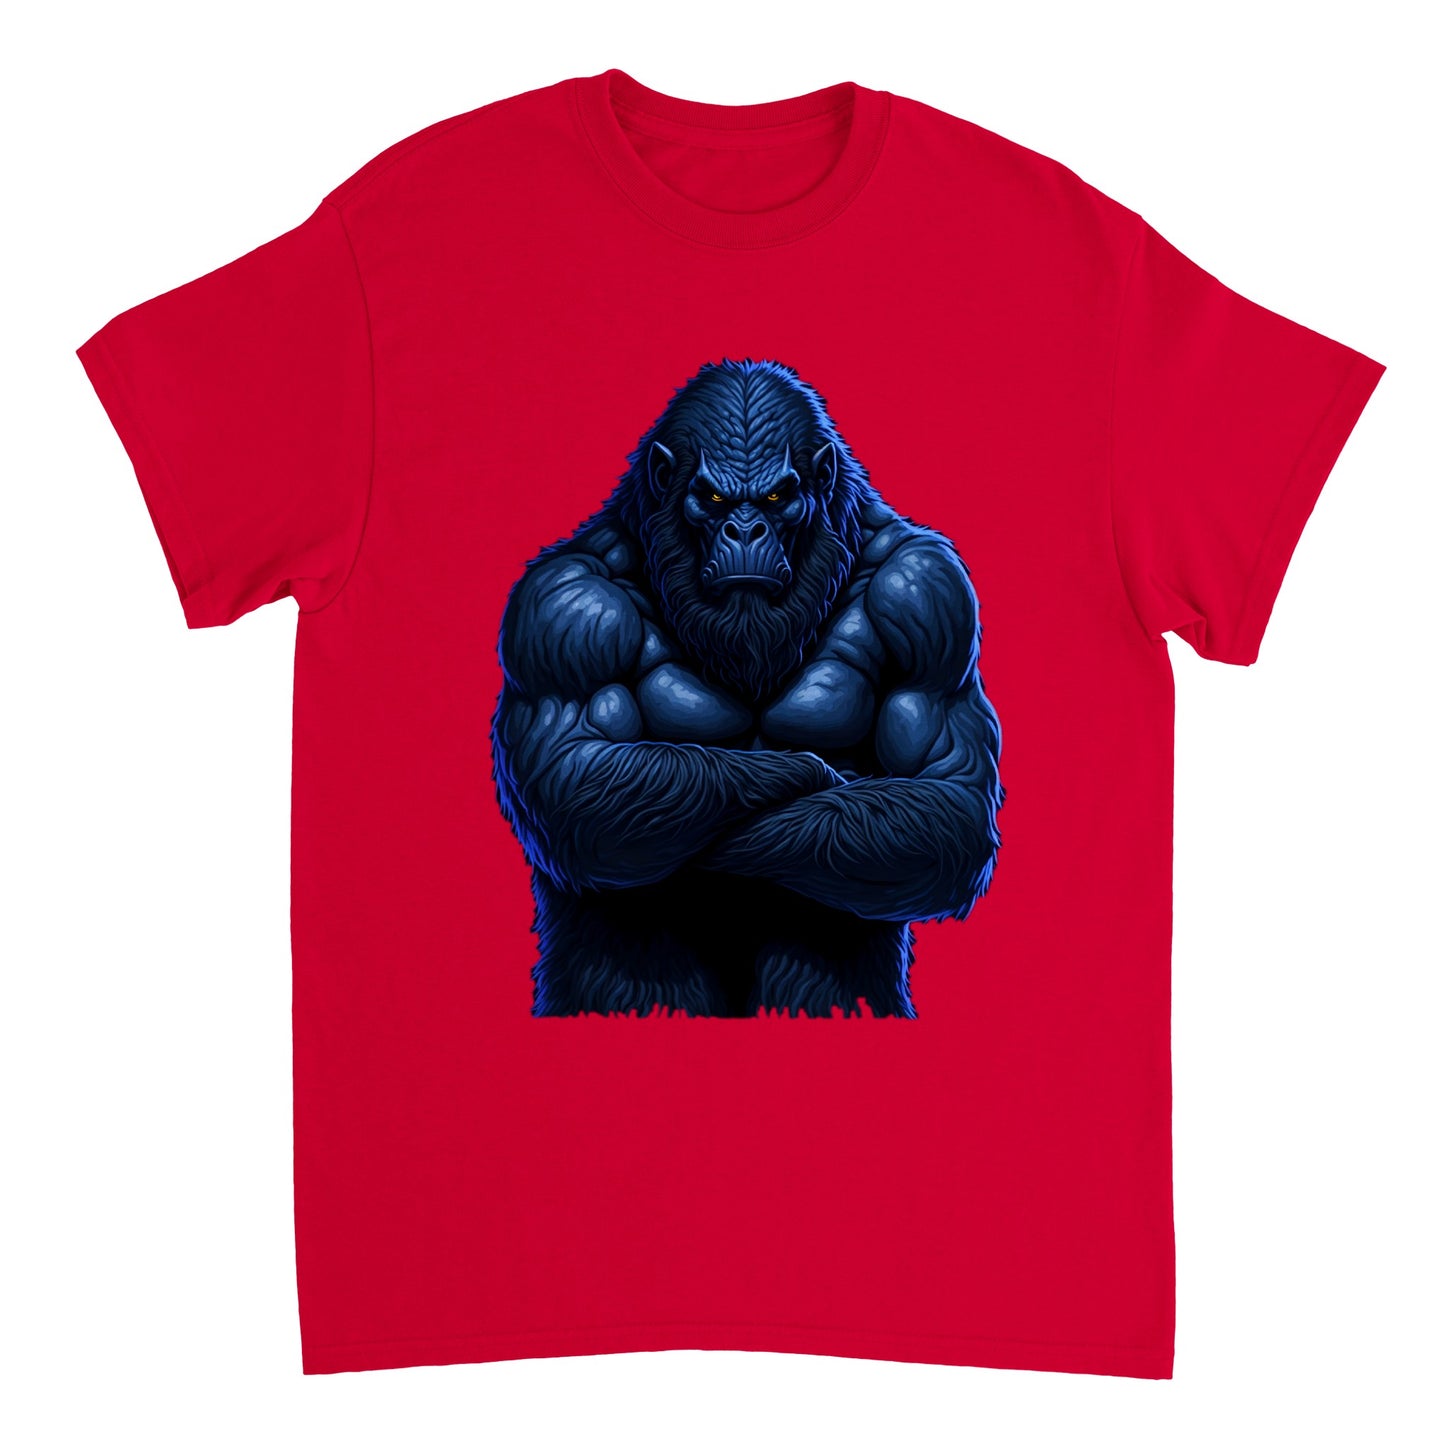 3D Bigfoot Art - Heavyweight Unisex Crewneck T-shirt 14